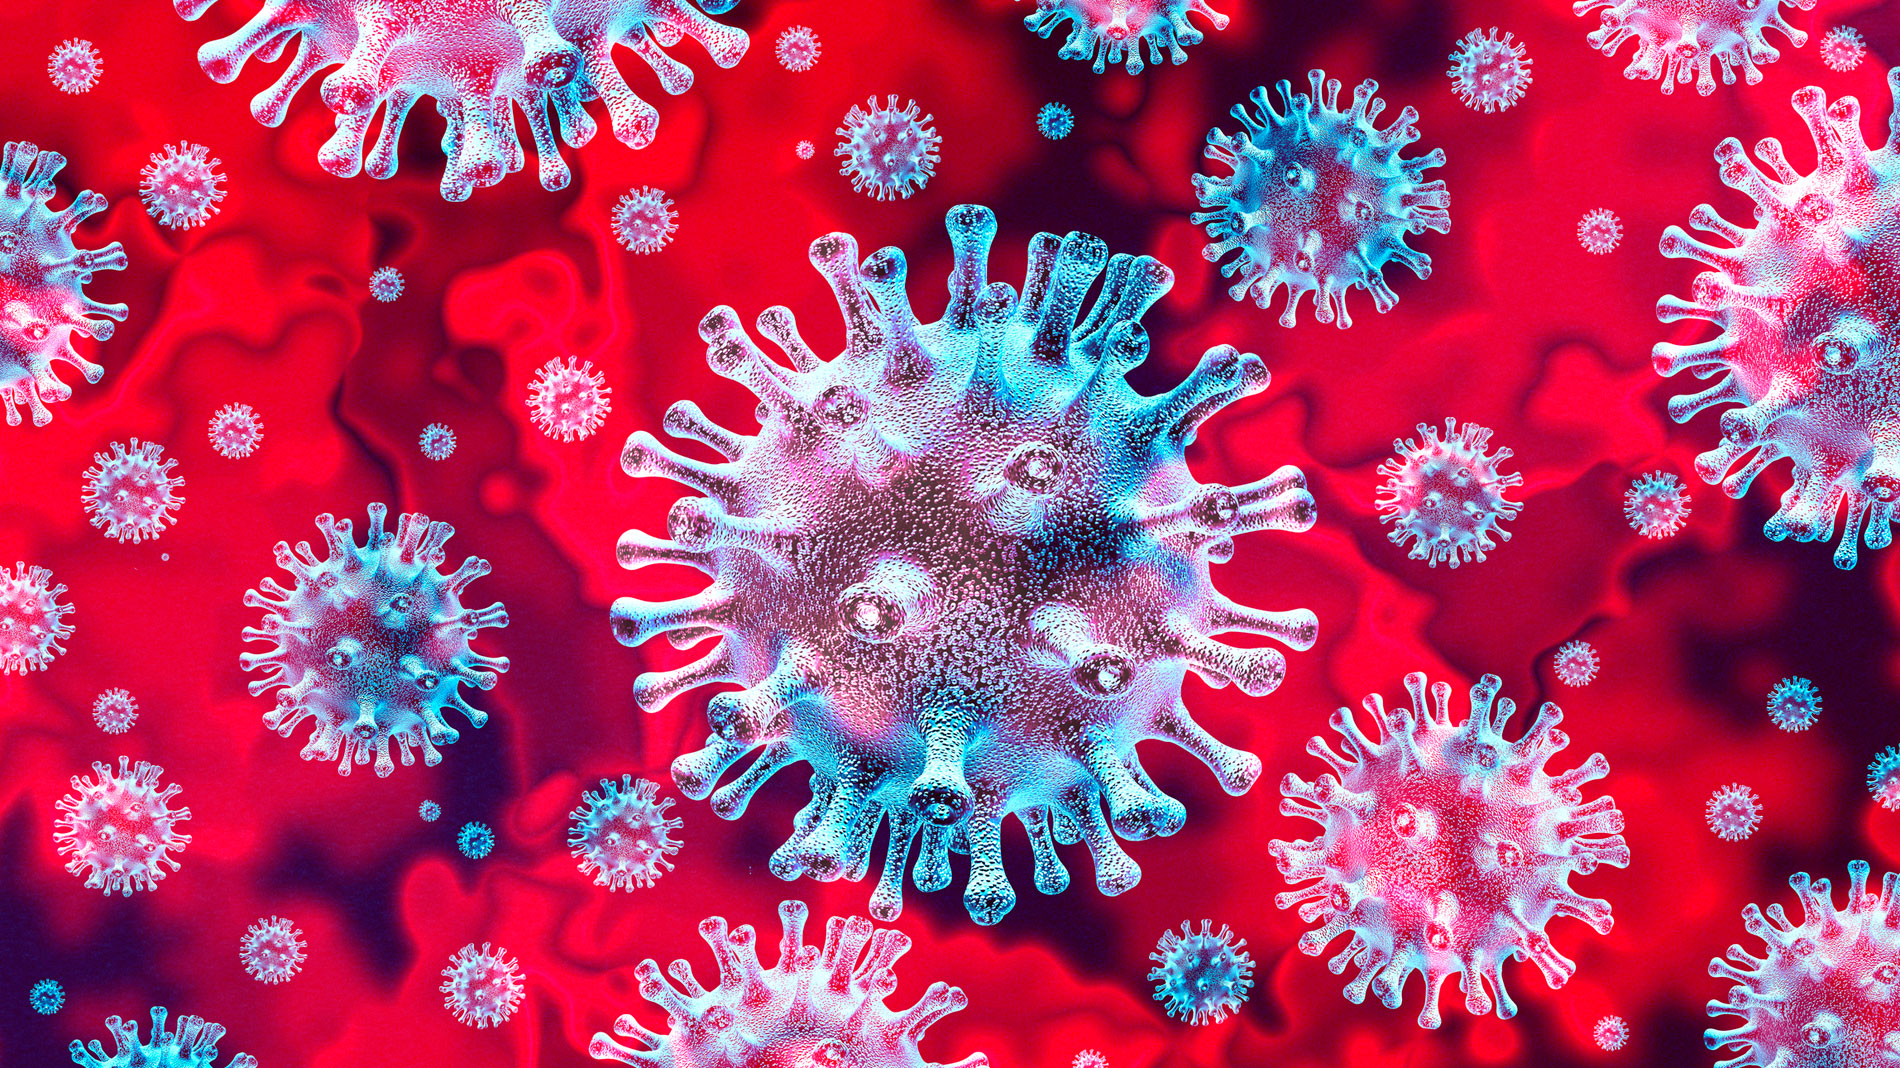  8 cosas que no sabías del Coronavirus de Wuhan